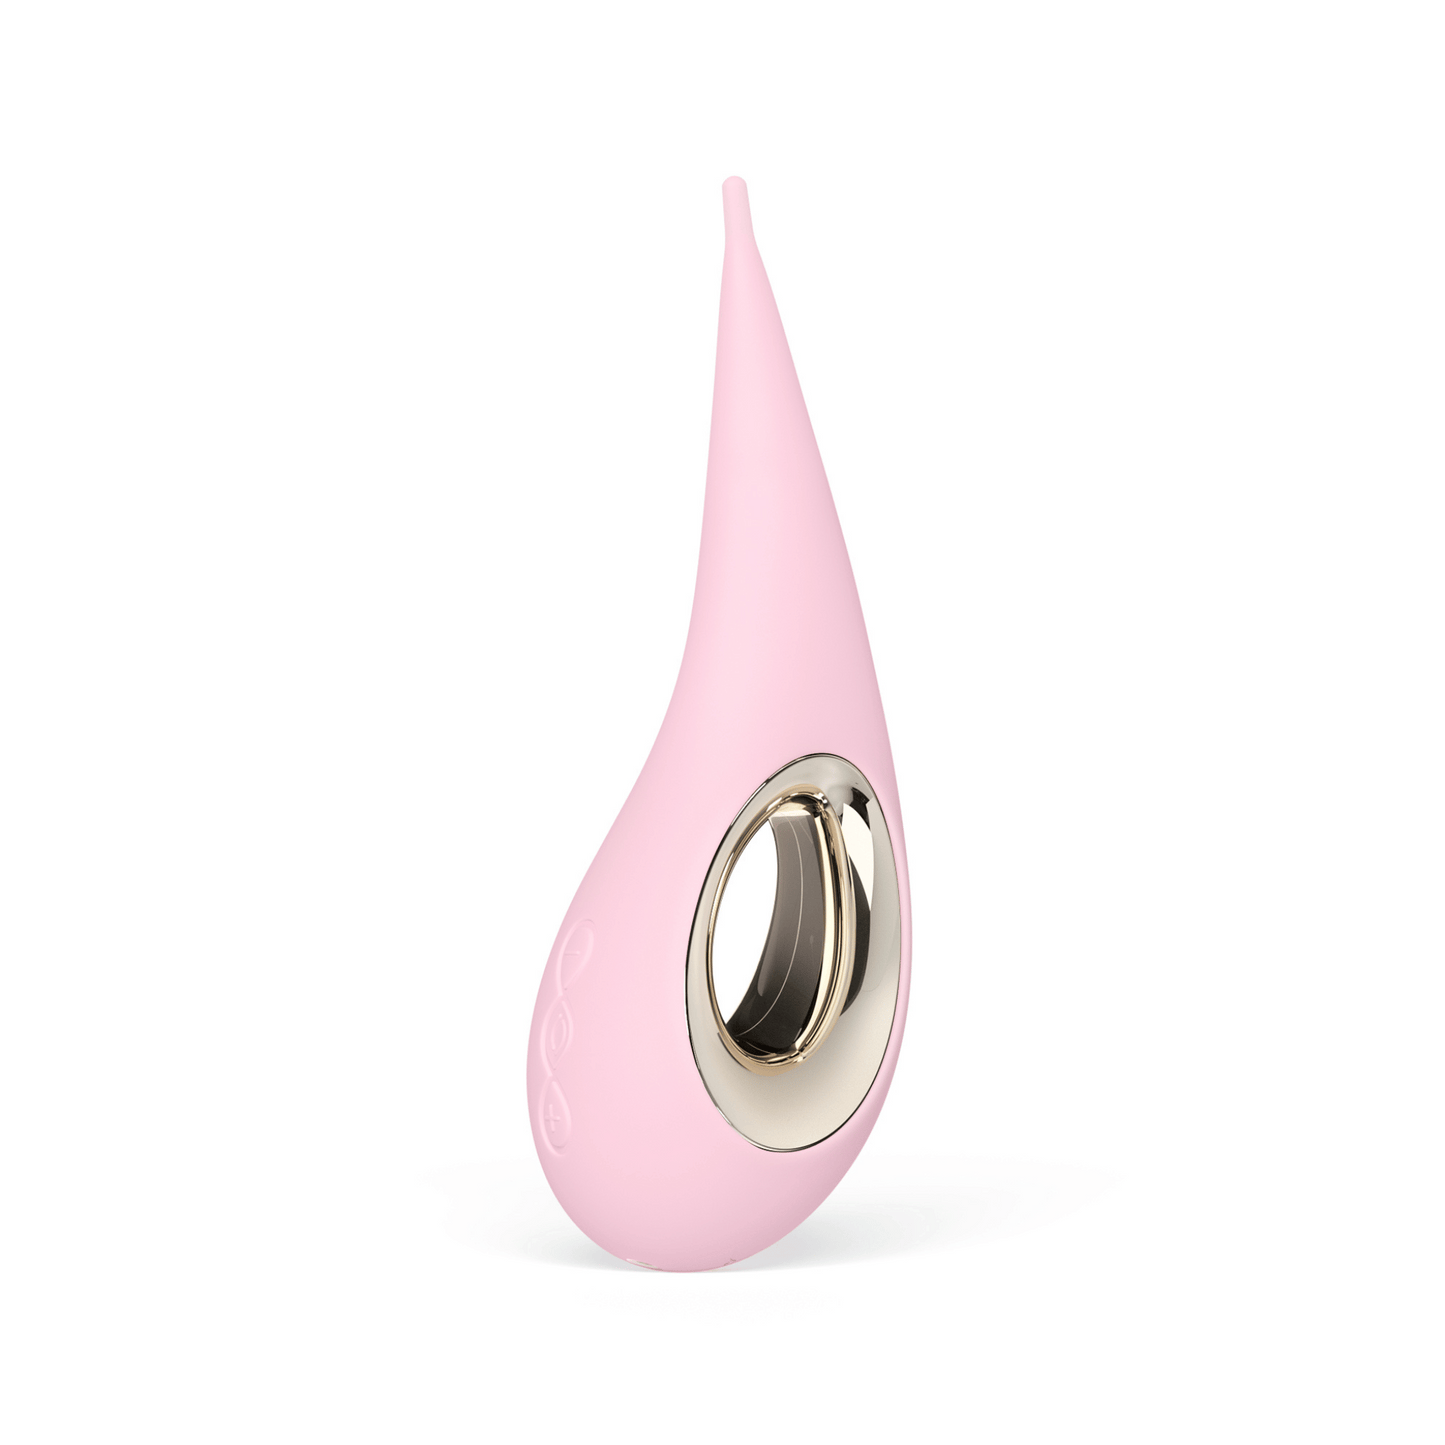 Stimulateur clitoridien Lelo Dot rose pastel, conçu pour une stimulation précise, disponible sur OhMyGodz.fr pour une expérience intime de luxe.